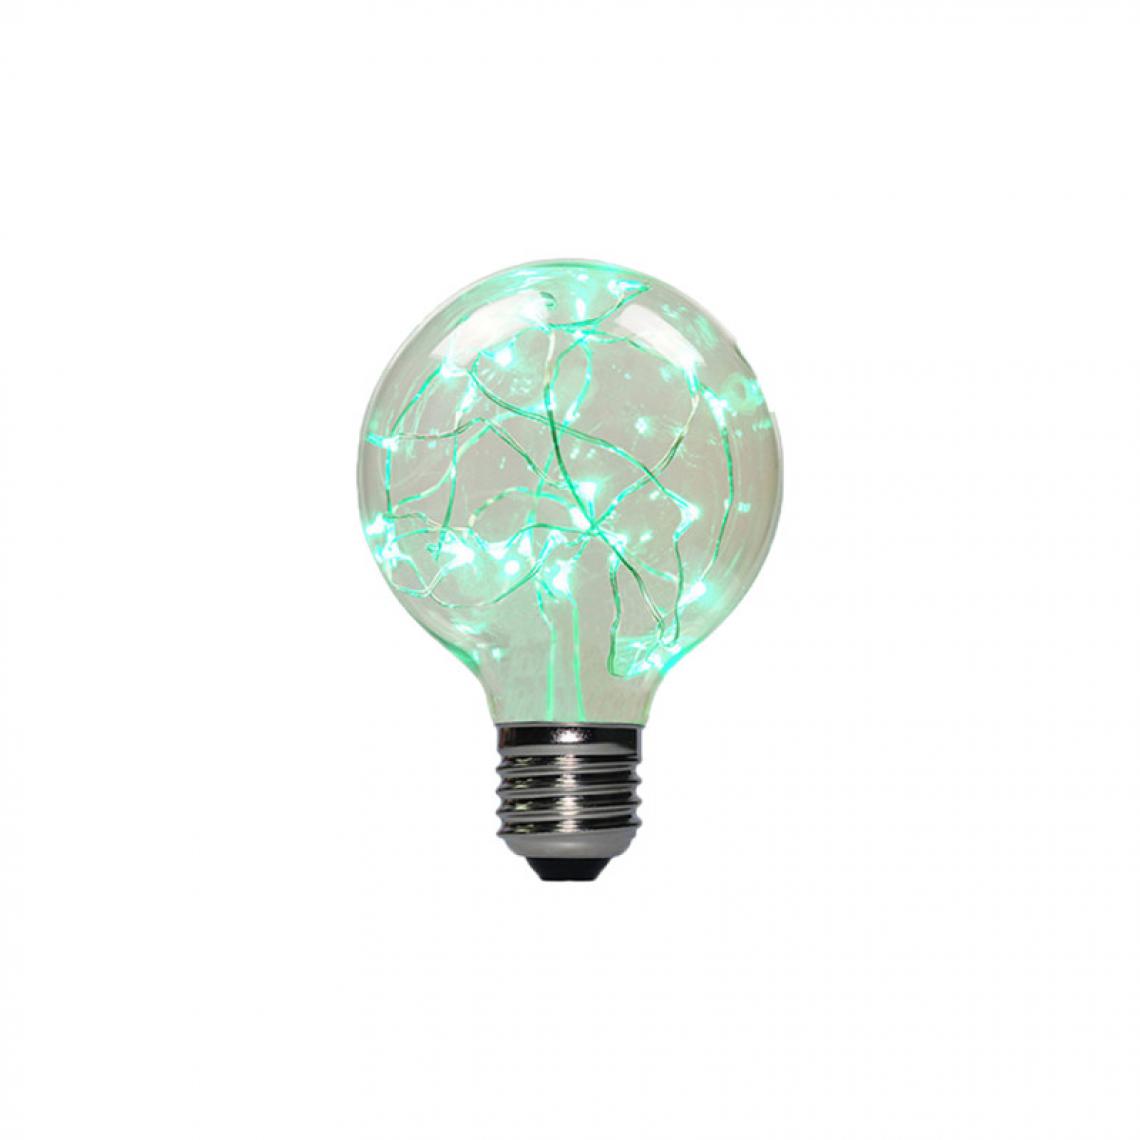 Xxcell - Ampoule LED globe verte à fil de cuivre XXCELL - 2 W - E27 - Ampoules LED